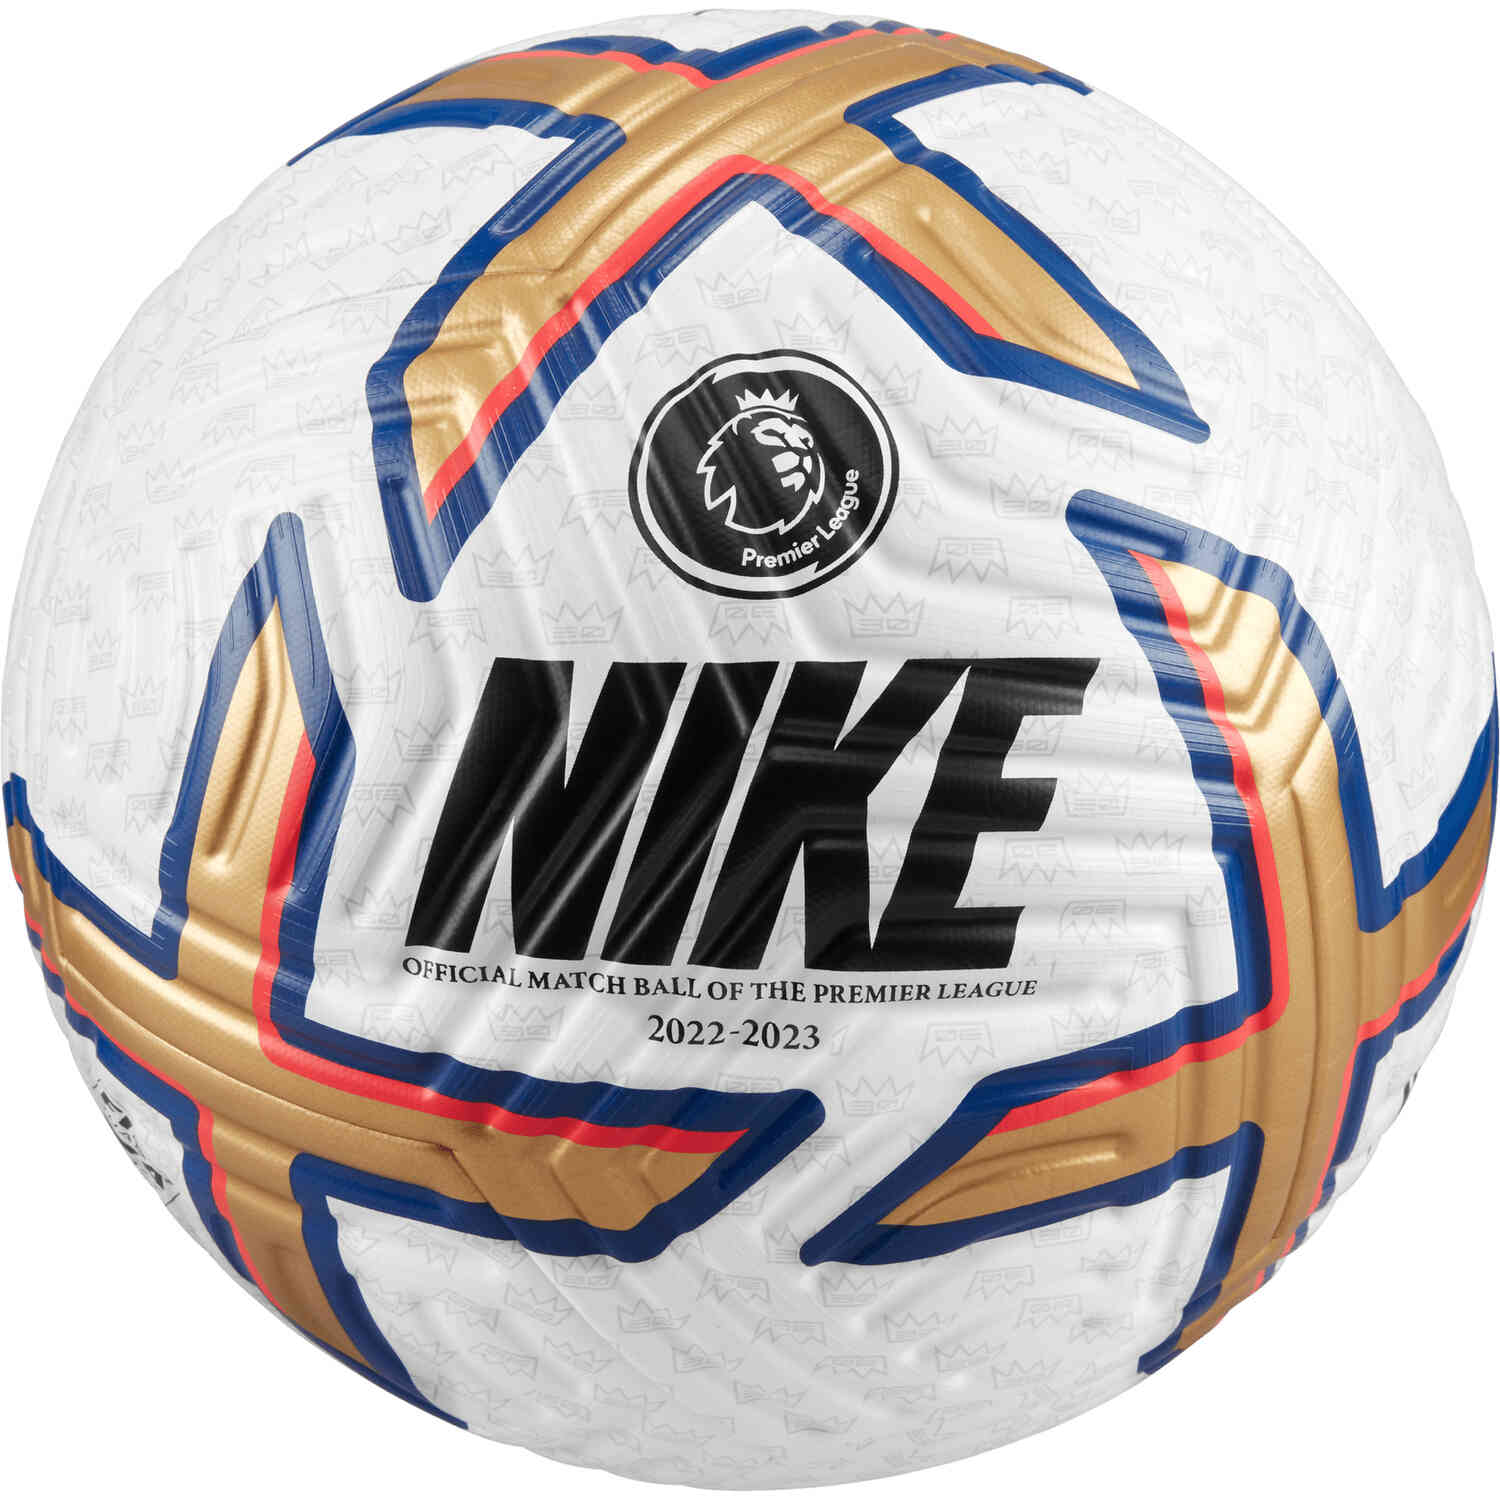 Nike Premier League Flight Official Match Soccer Ball 202223 Soccerpro